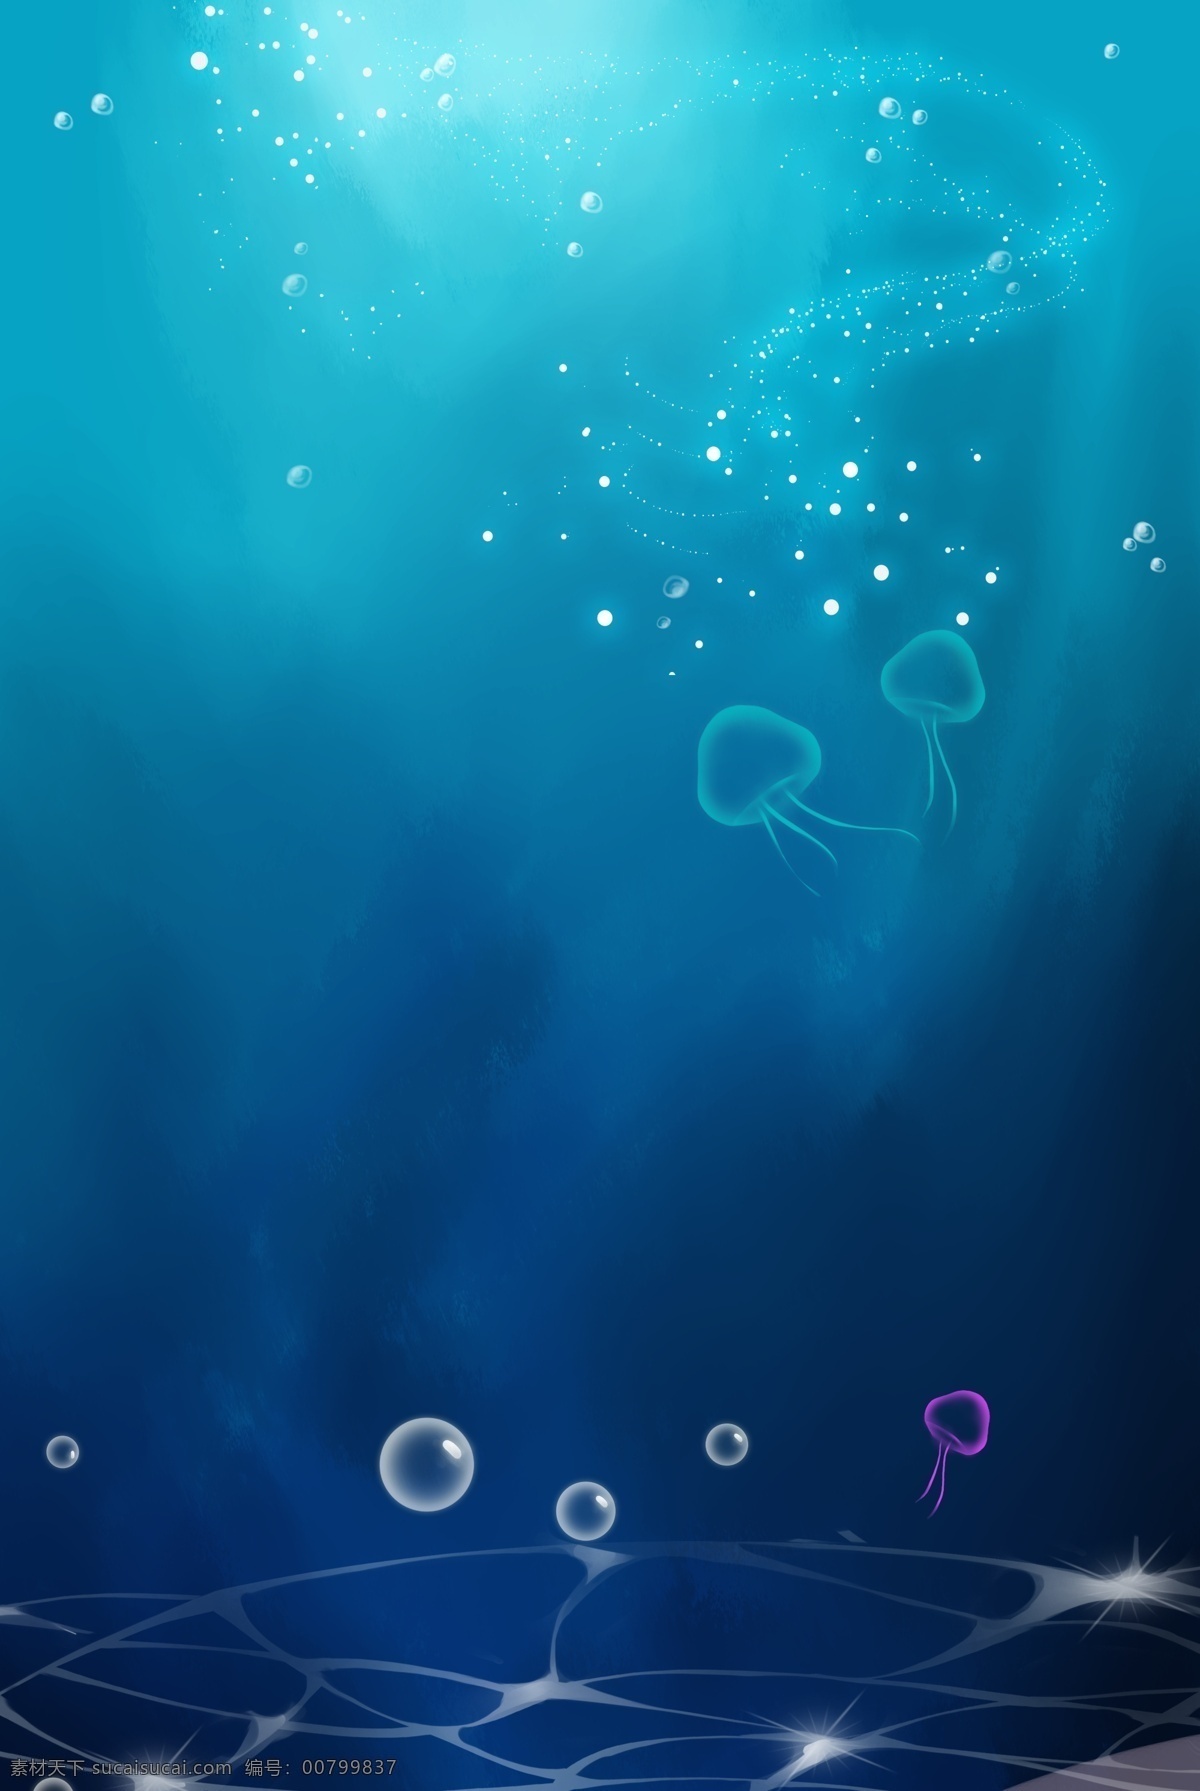 海洋世界 水母 分层 banner 蓝色 手绘 夏天 海底 鱼 海草 气泡 创意合成